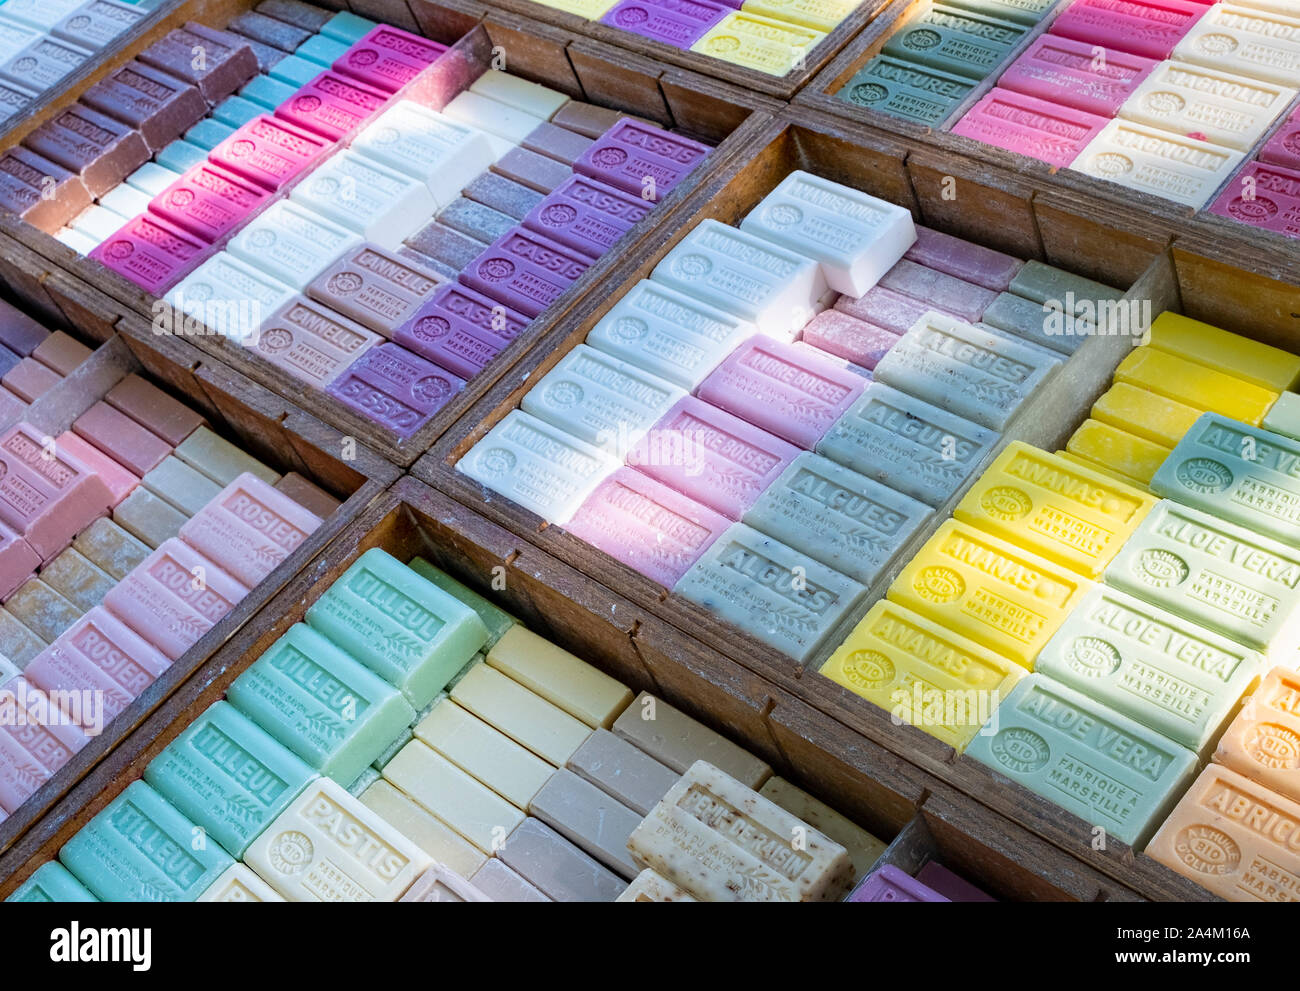 Sapone di Marsiglia, i profumi della Francia. Molti sapori, colori e profumi in sapone artigianale realizzato dall'olio d'oliva, venduti su bancarelle del mercato Foto Stock